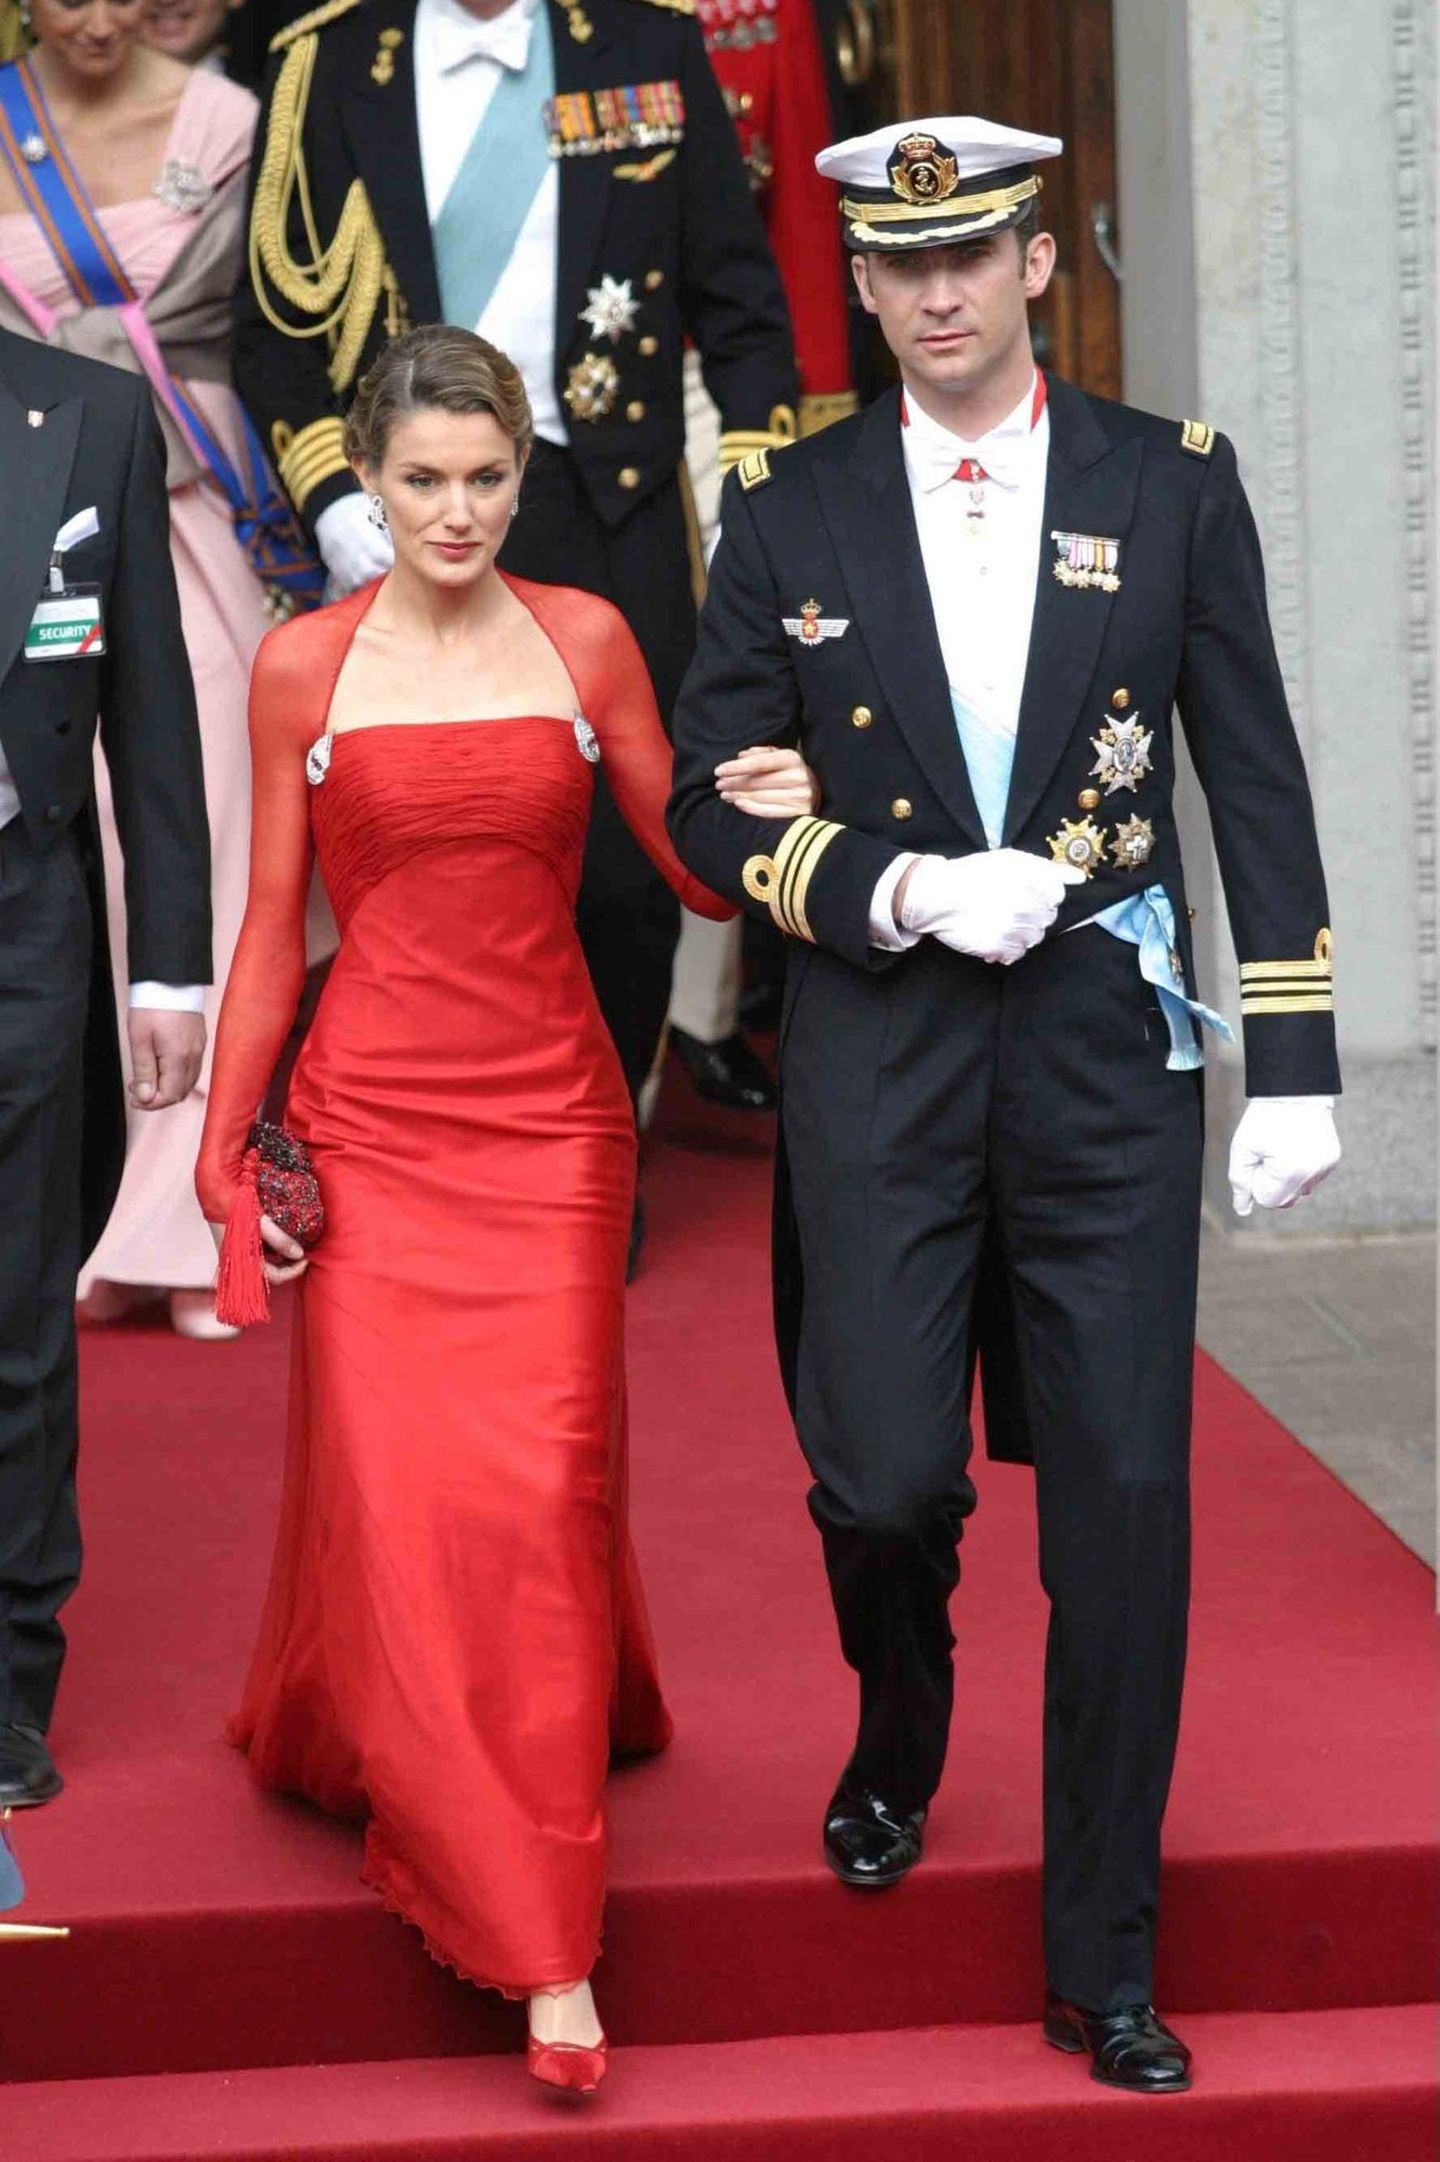 Am 14. Mai 2004 begleitet Letizia Ortiz Rocasolano ihren Verlobten, den spanischen Kronprinzen Felipe, zur Hochzeit von Prinz Frederik und Mary Donaldson nach Kopenhagen. Ein großer Auftritt für die Moderatorin, der aber noch ohne Diadem auskommen muss. Das gibt es erst zur Hochzeit.   